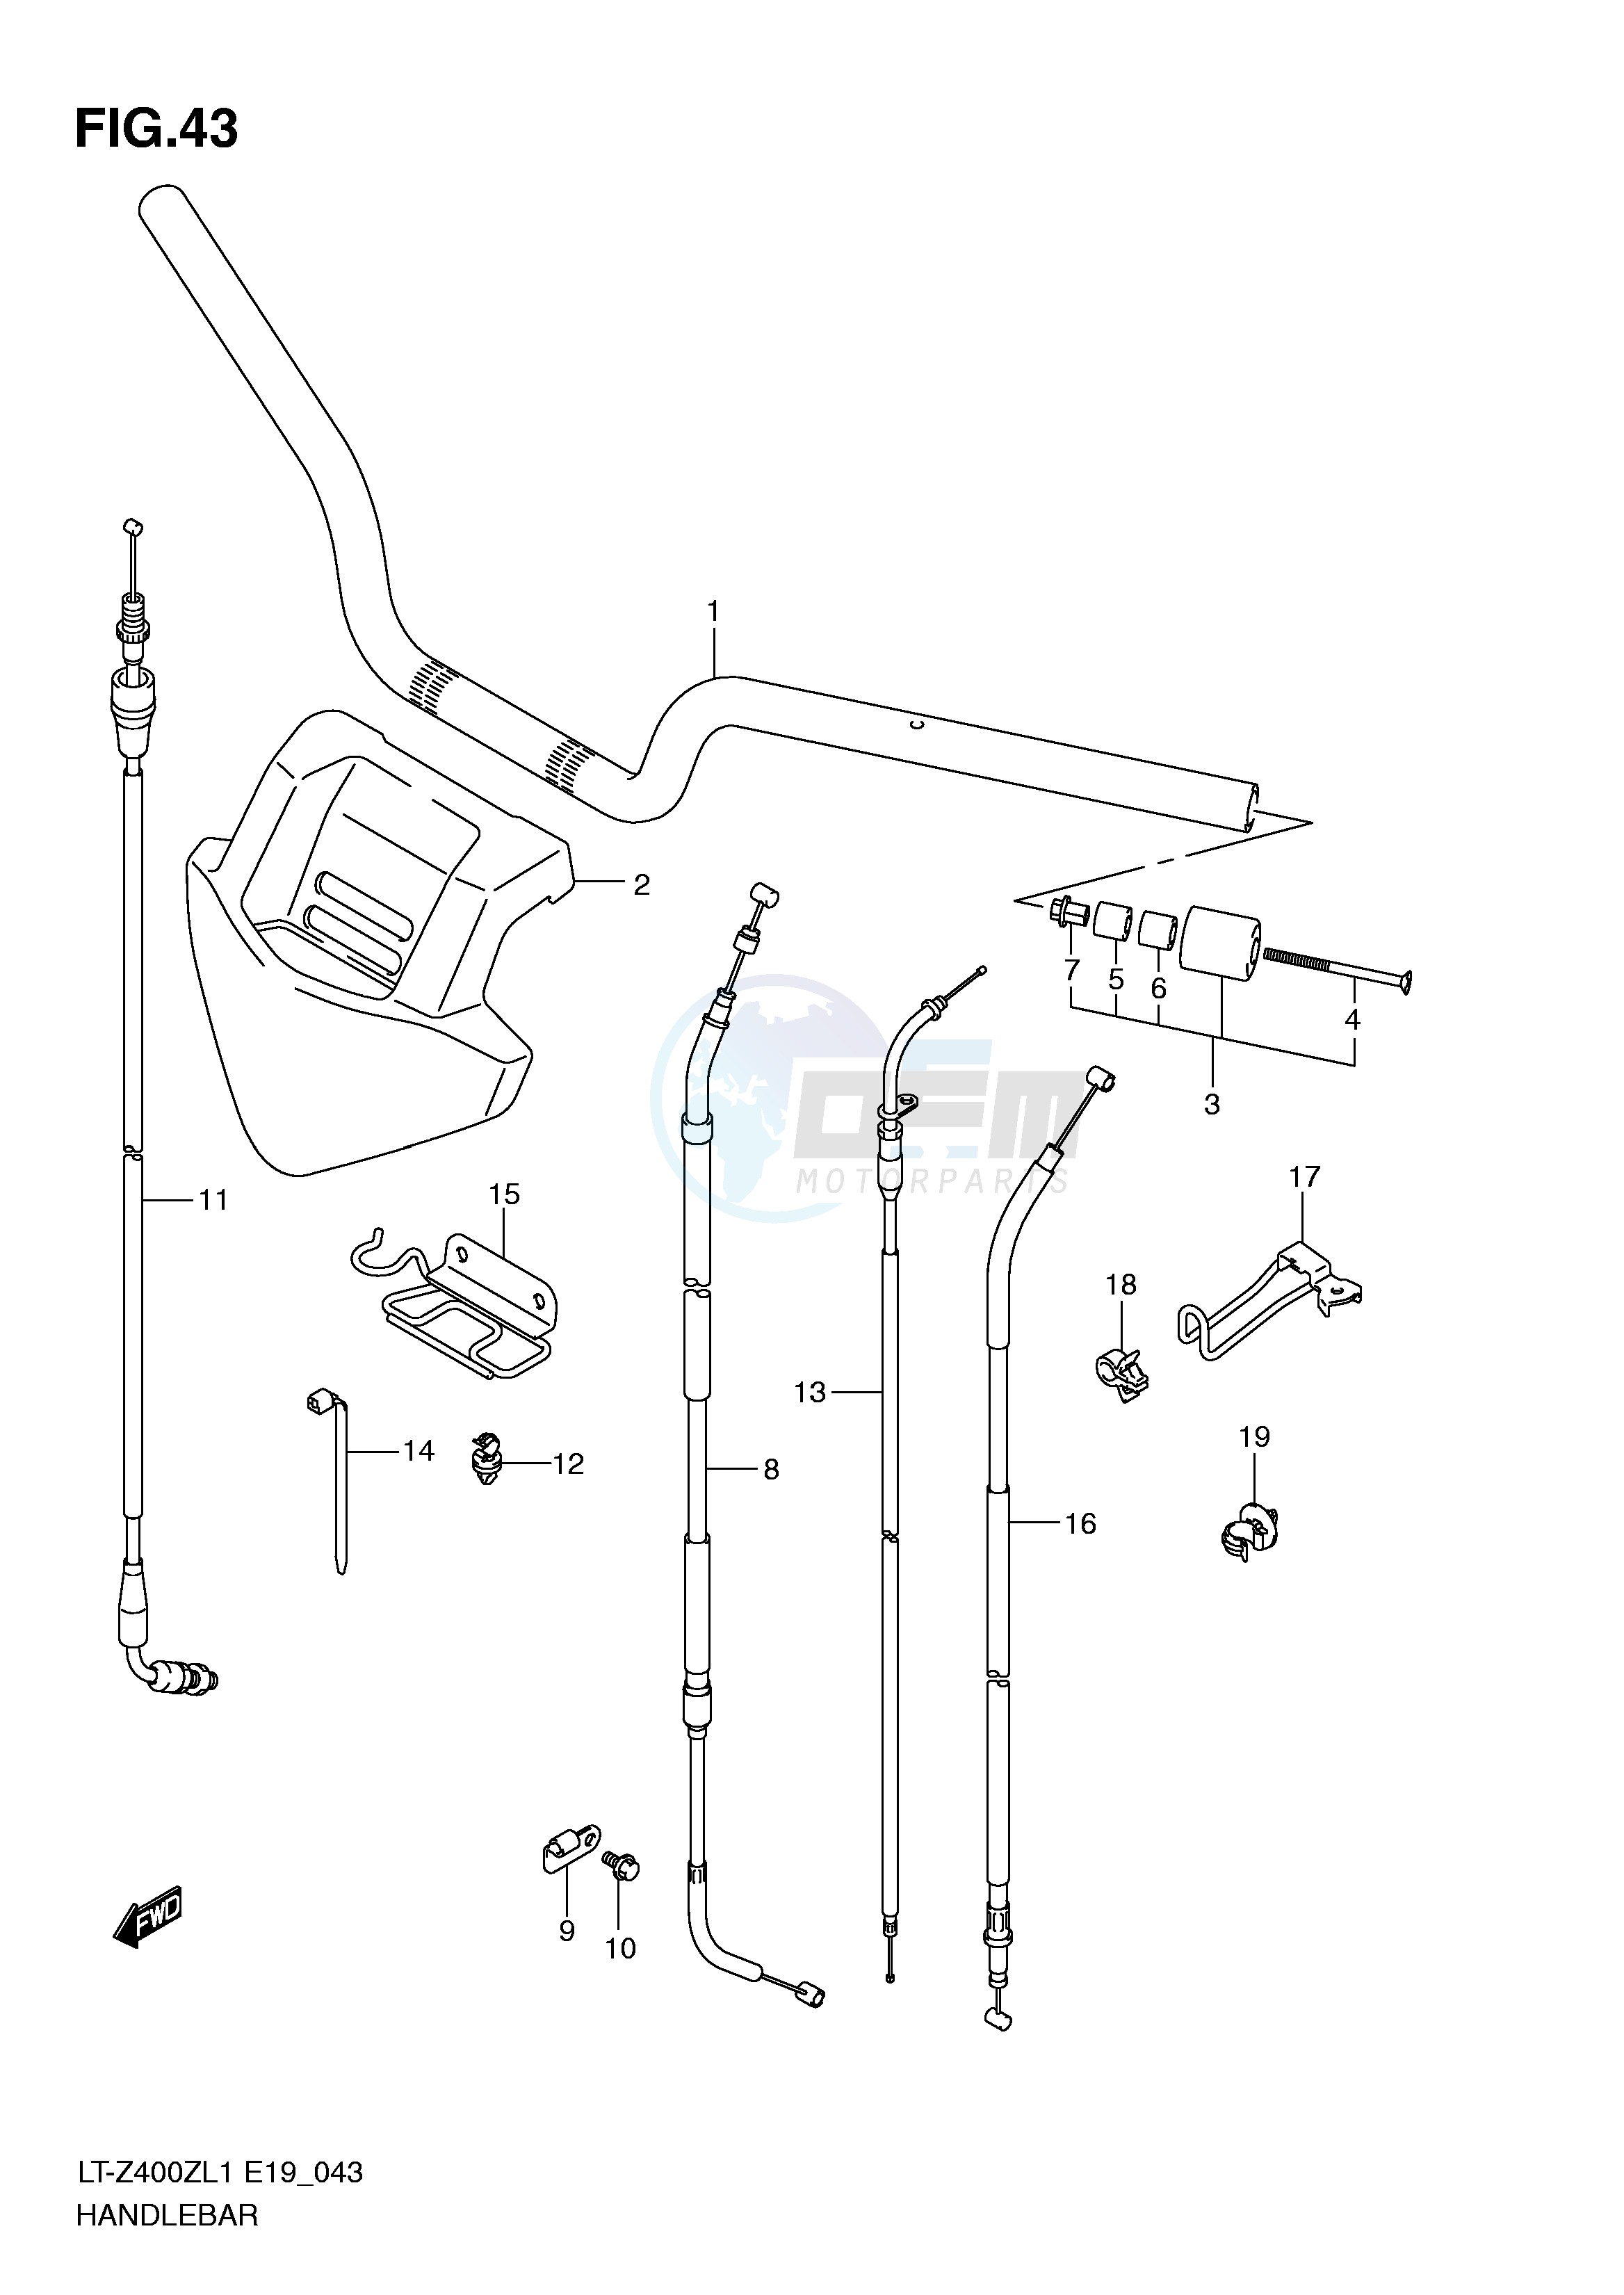 HANDLEBAR (LT-Z400ZL1 E19) blueprint